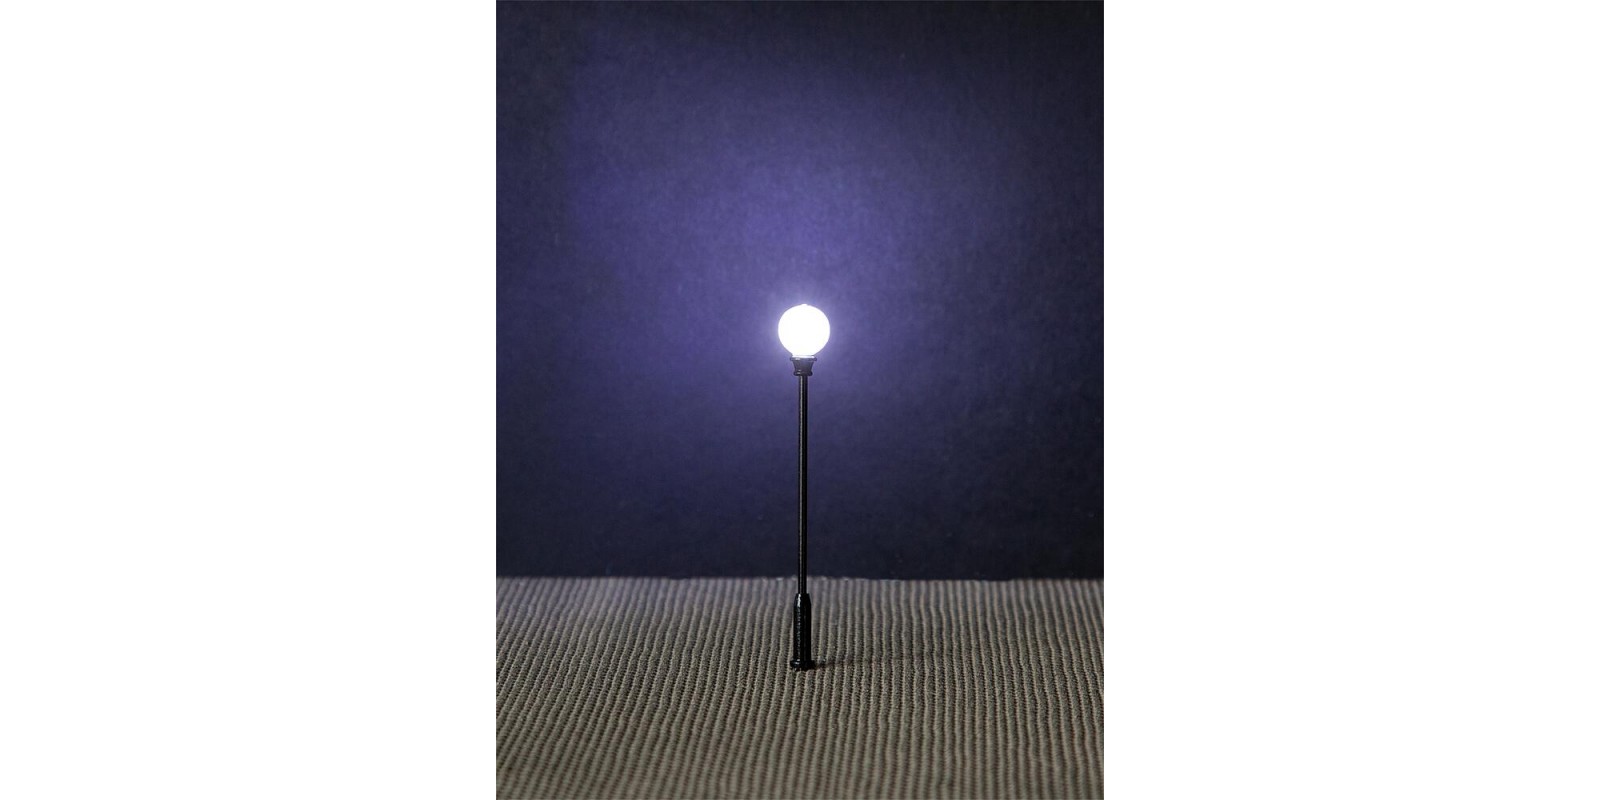 FA180104 LED Park light, pole-top ball lamp, 3 pcs.